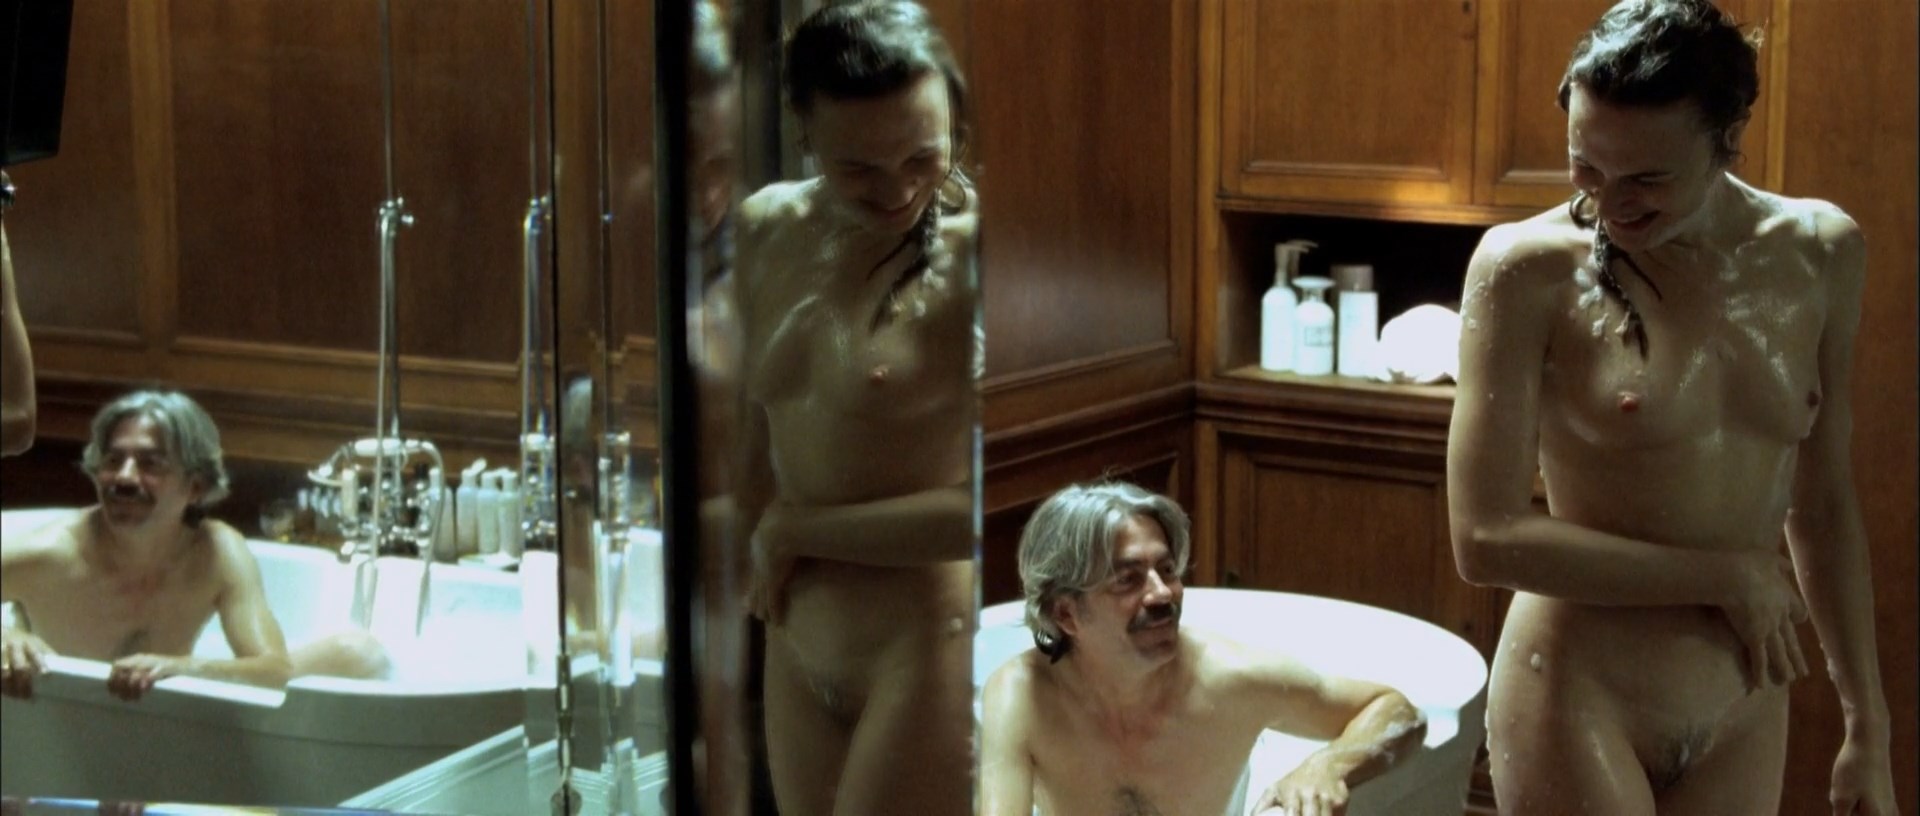 Alba Ribas Nude Celebs Nude Video Nudecelebvideo Net